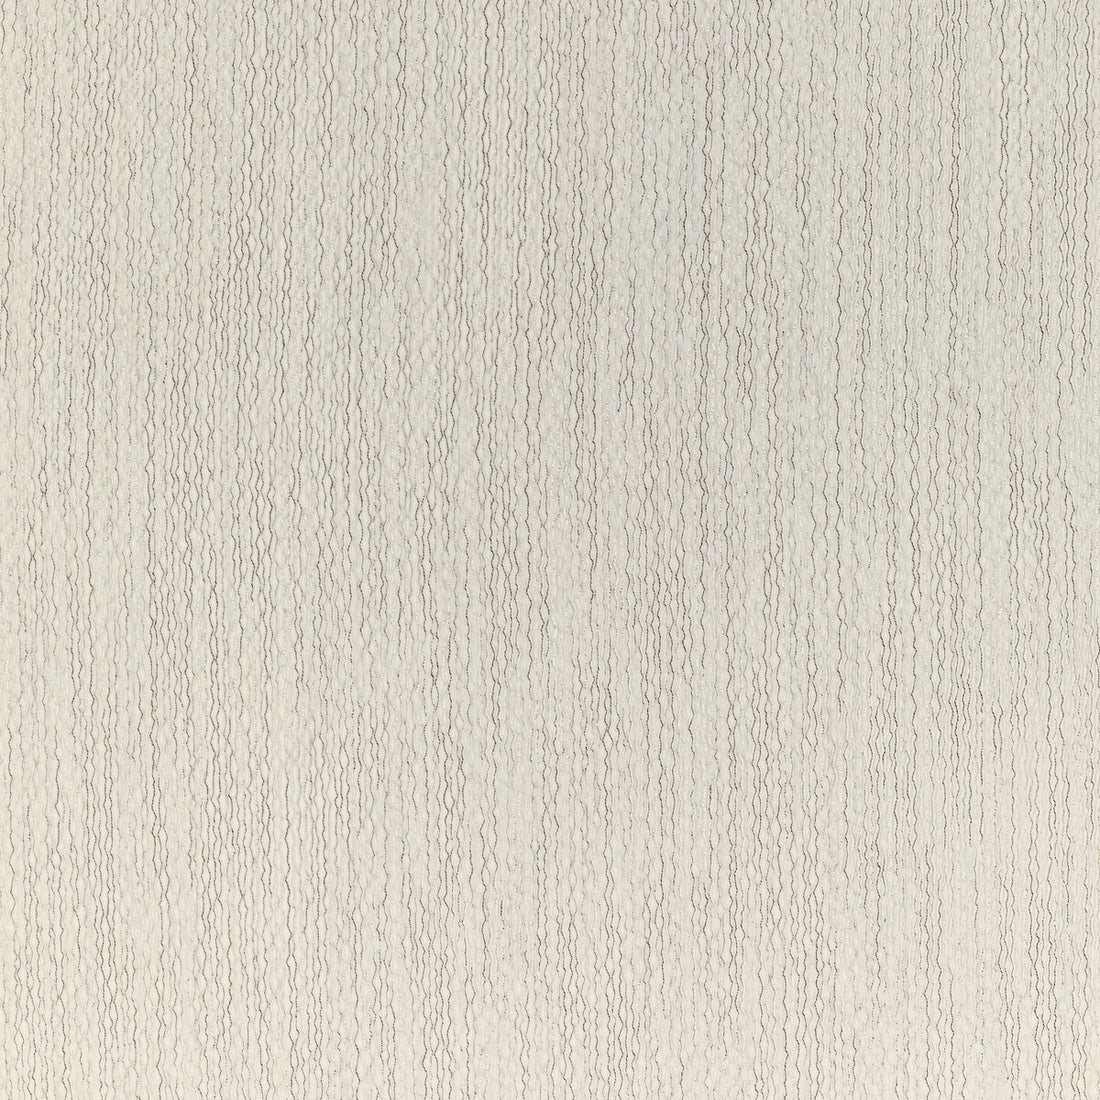 Kravet Basics fabric in 4871-1 color - pattern 4871.1.0 - by Kravet Basics